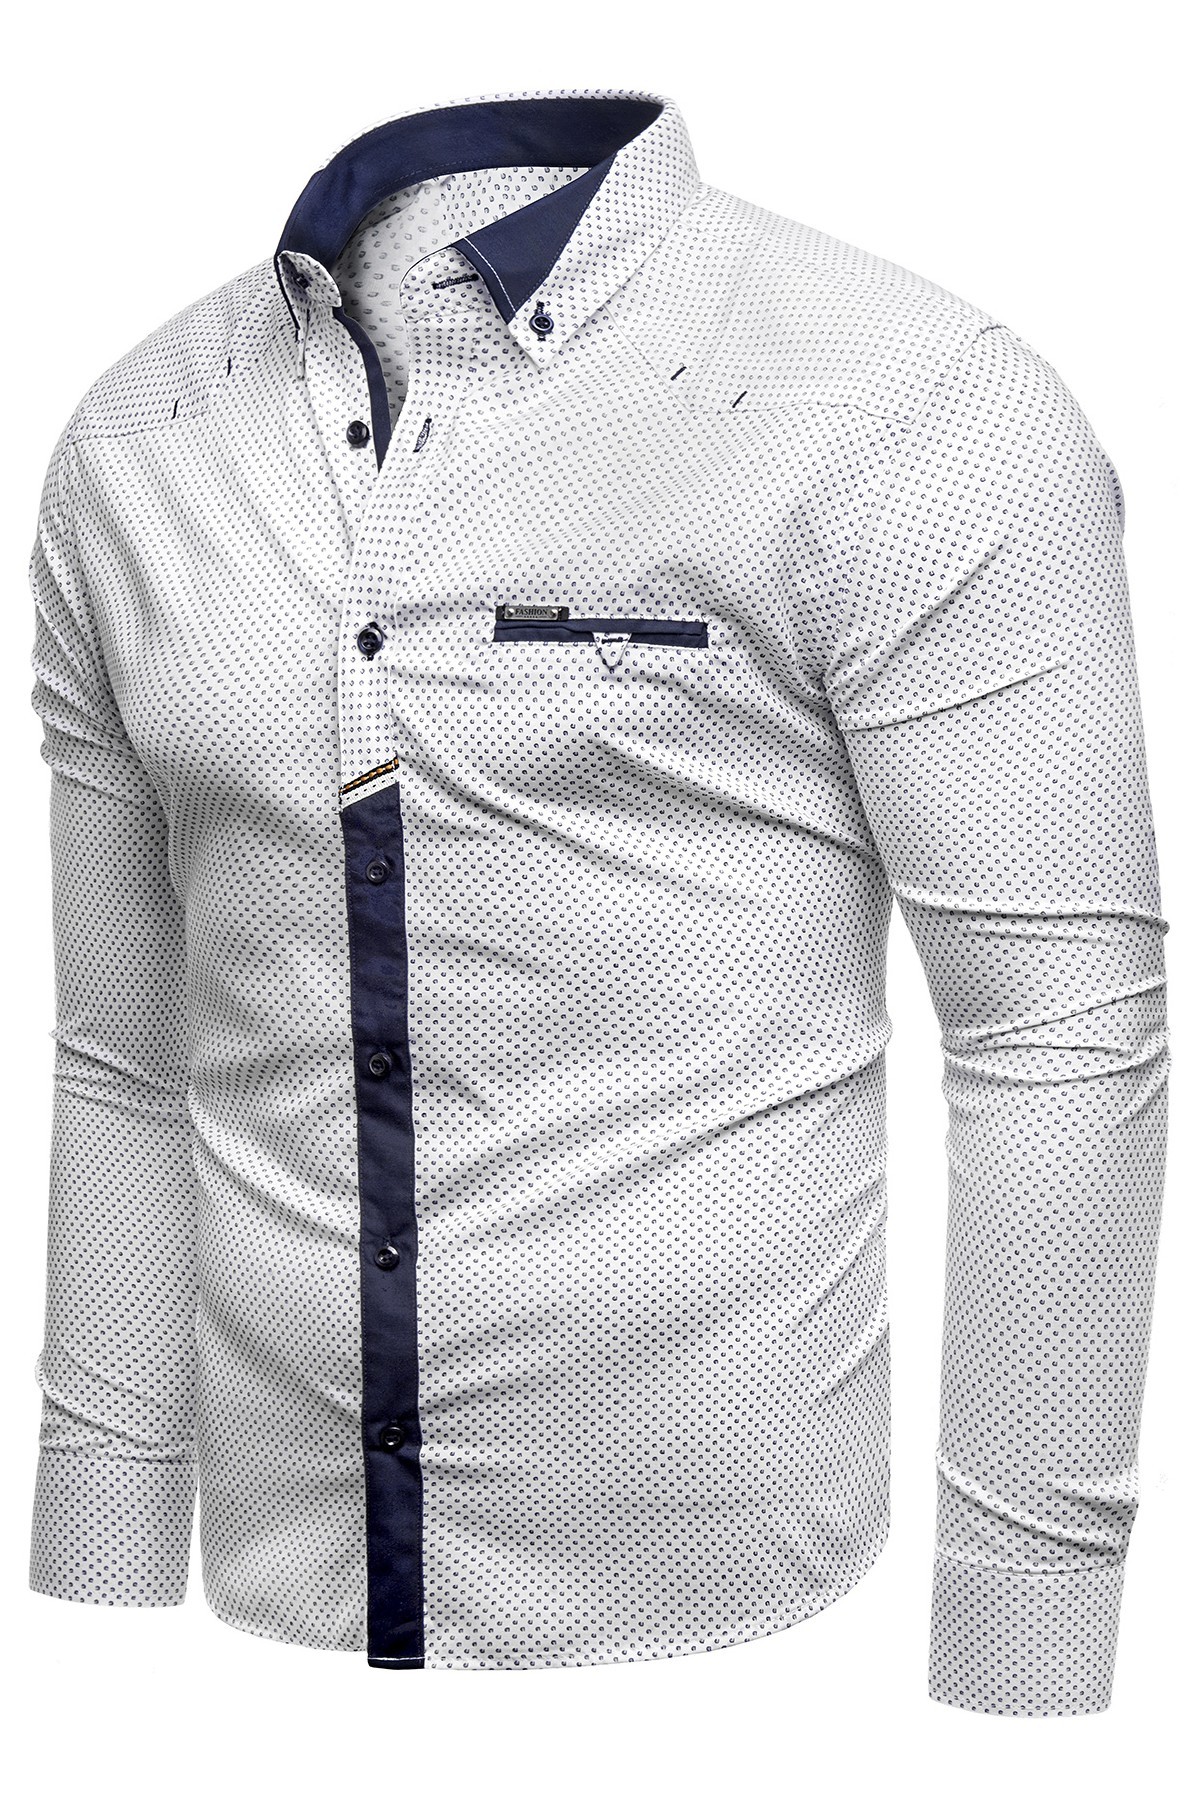 Koszula męska długi rękaw 610 - biała